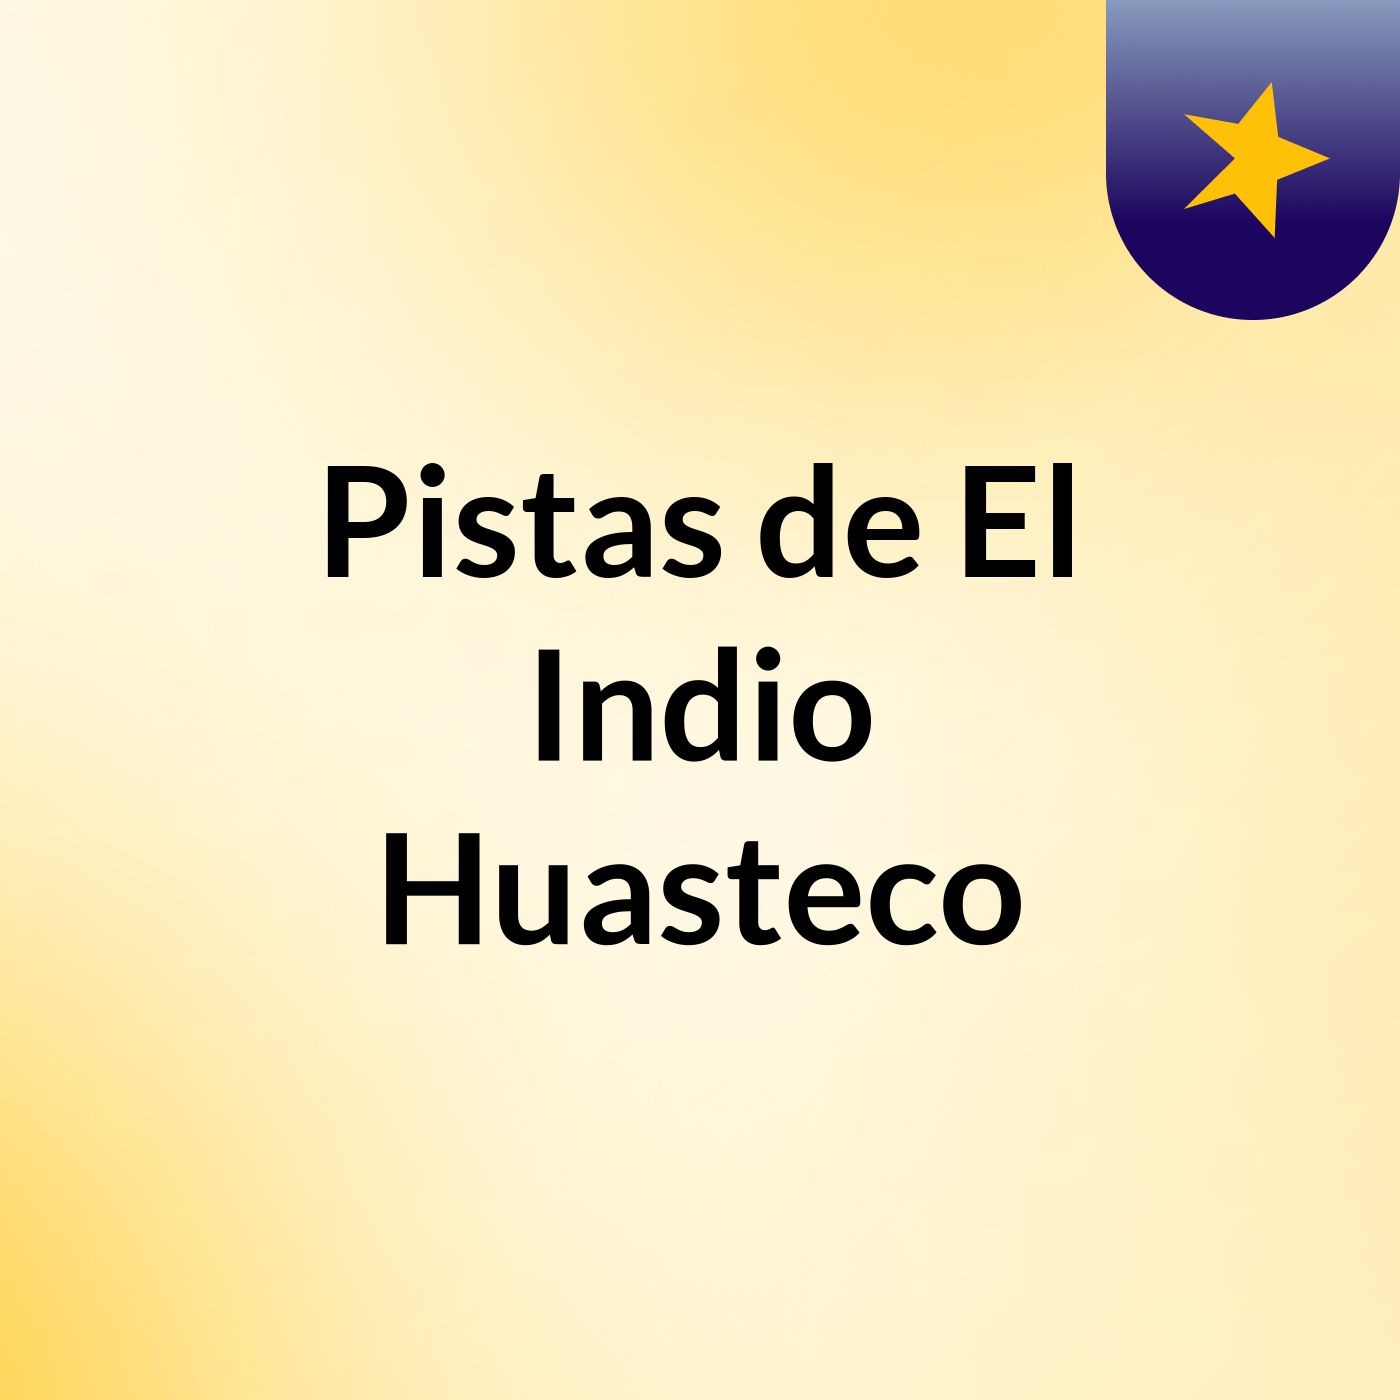 Pistas de El Indio Huasteco